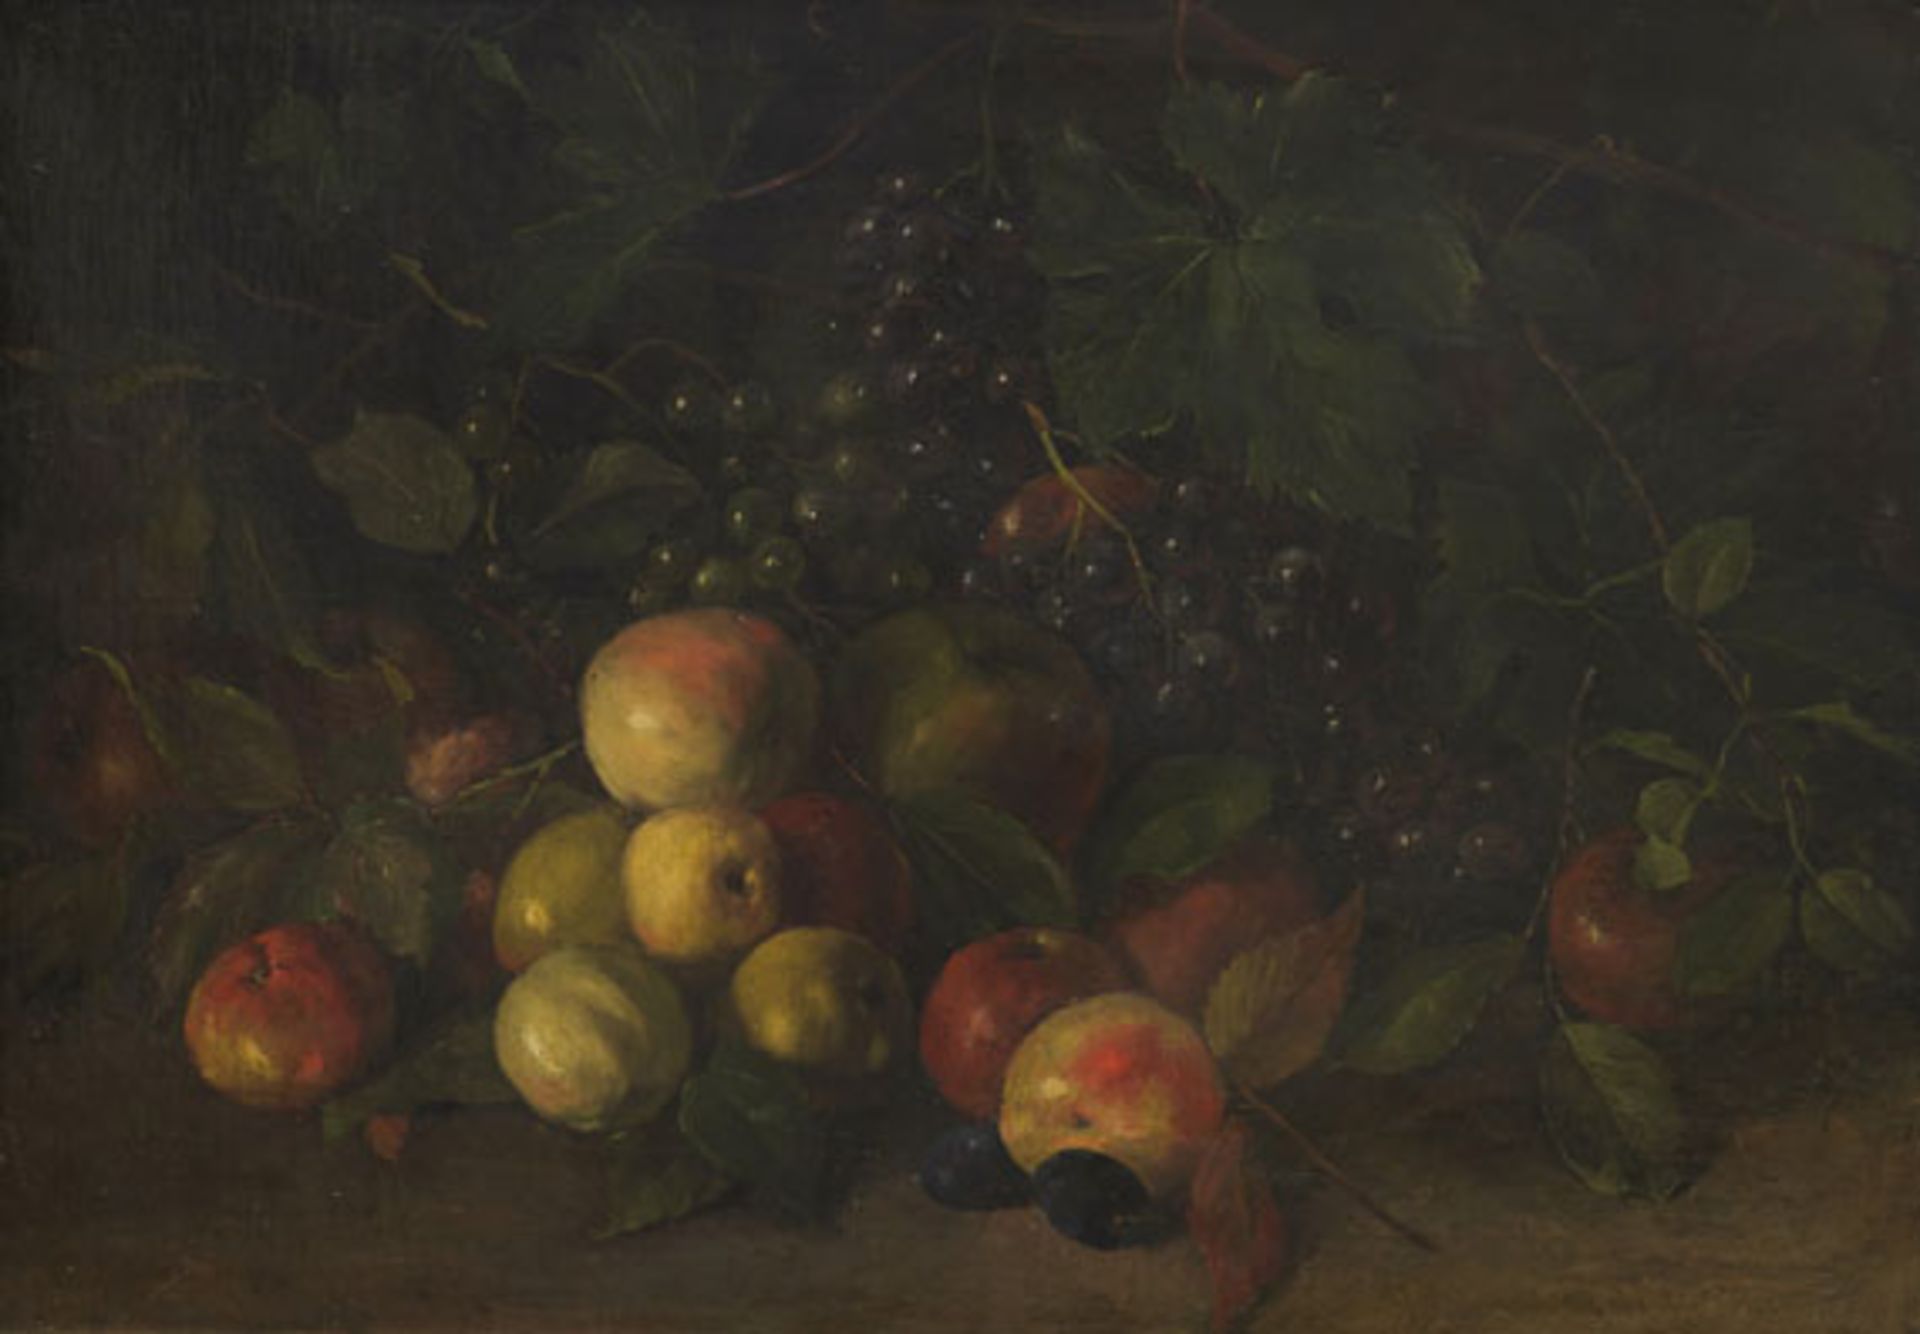 Johann Sperl - Stillleben mit Früchten - Öl auf Leinwand - 1888